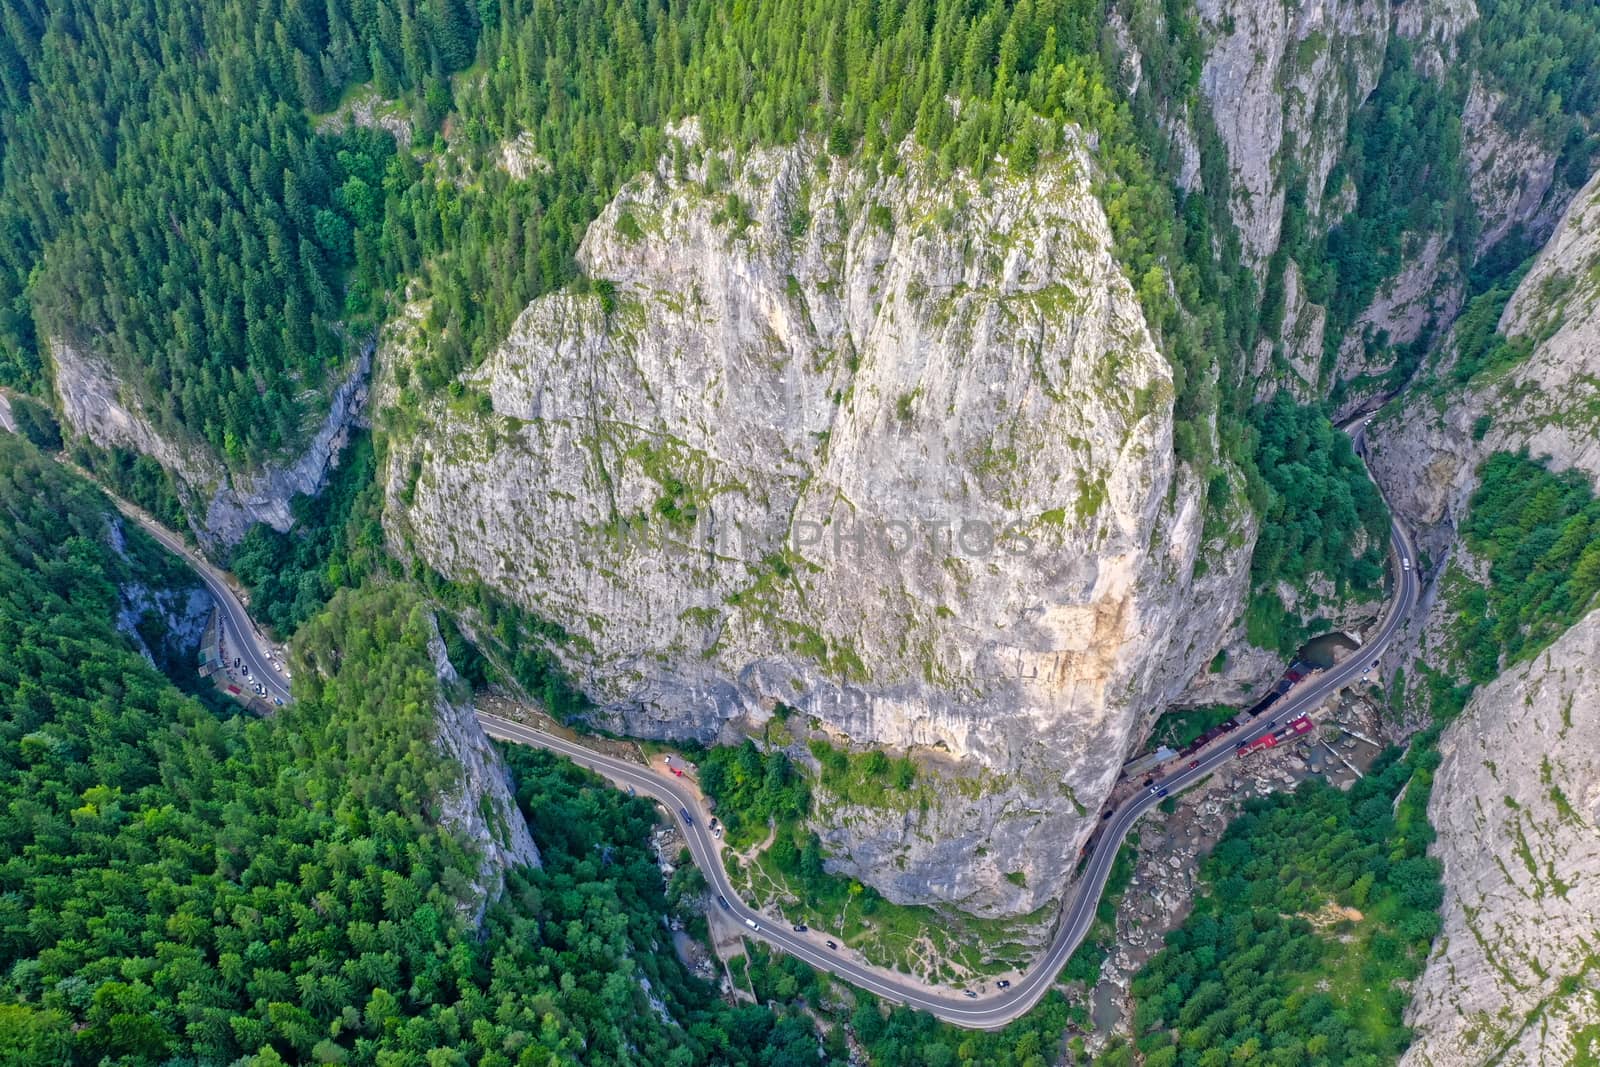 Rocky mountain pass in Romanian Carpathians, highway road near huge rocks